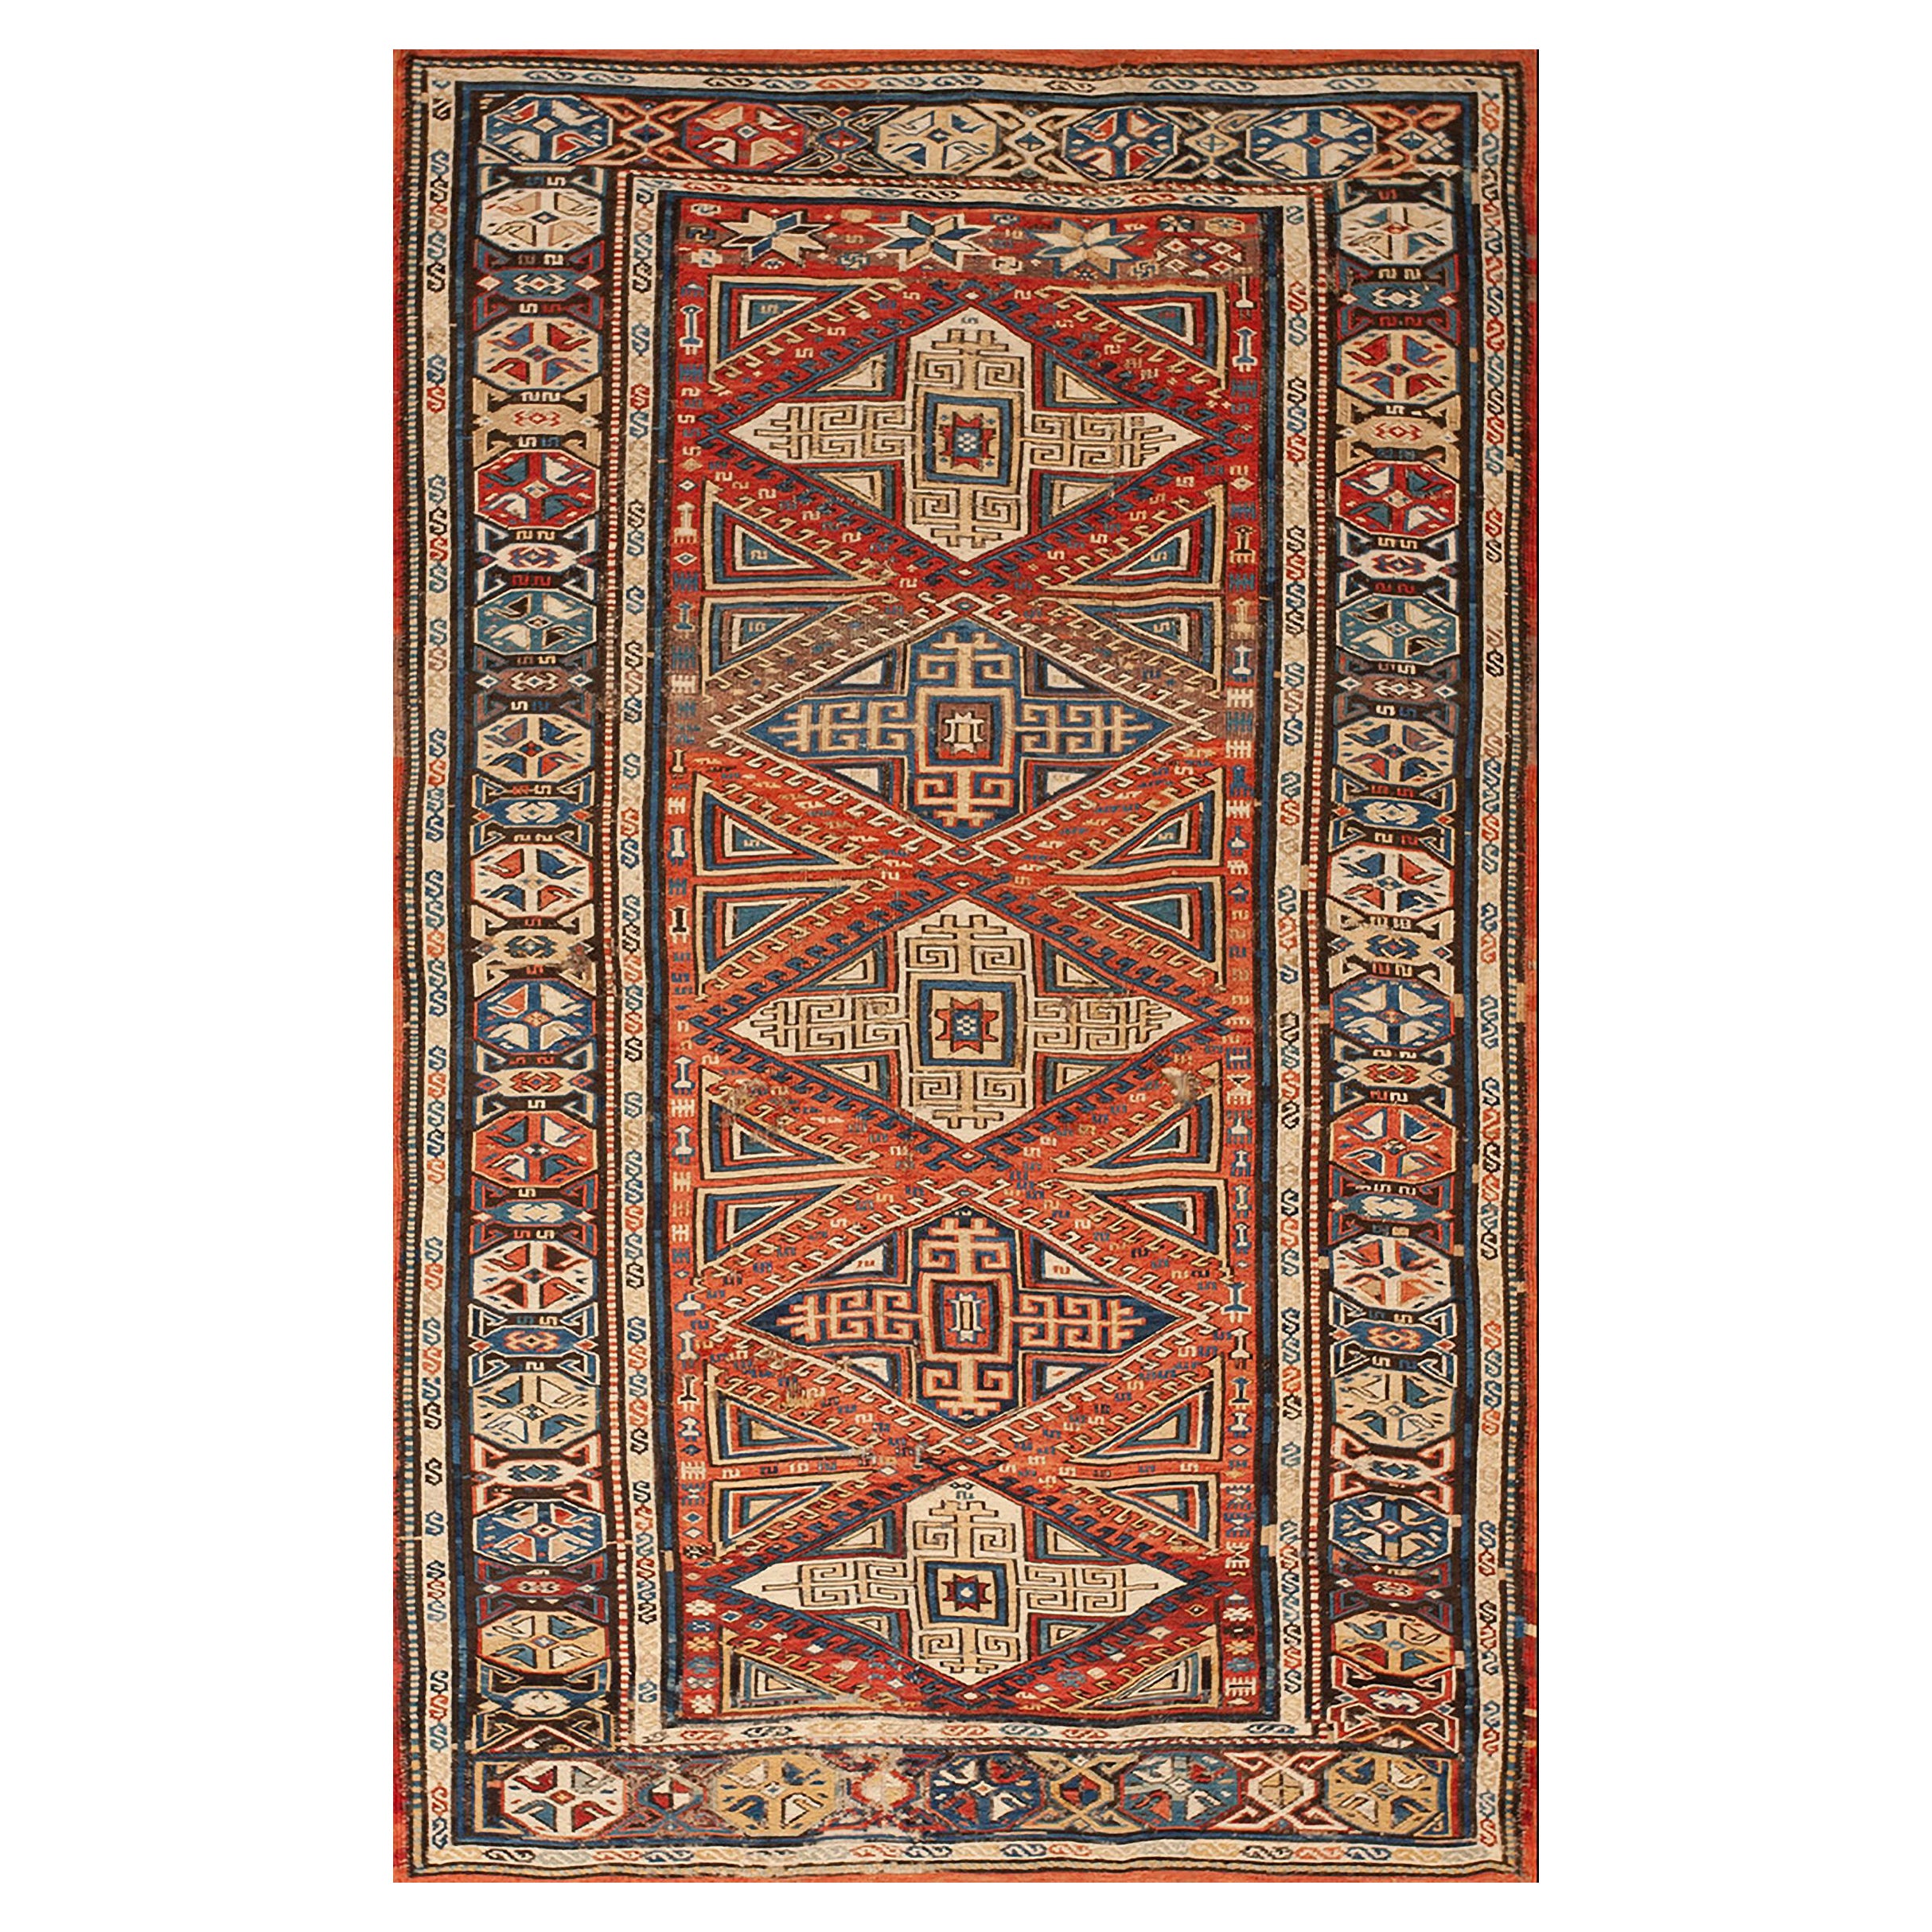 19th Century Caucasian Sumak Carpet ( 3'8" x 6'3" - 112 x 191 ) For Sale